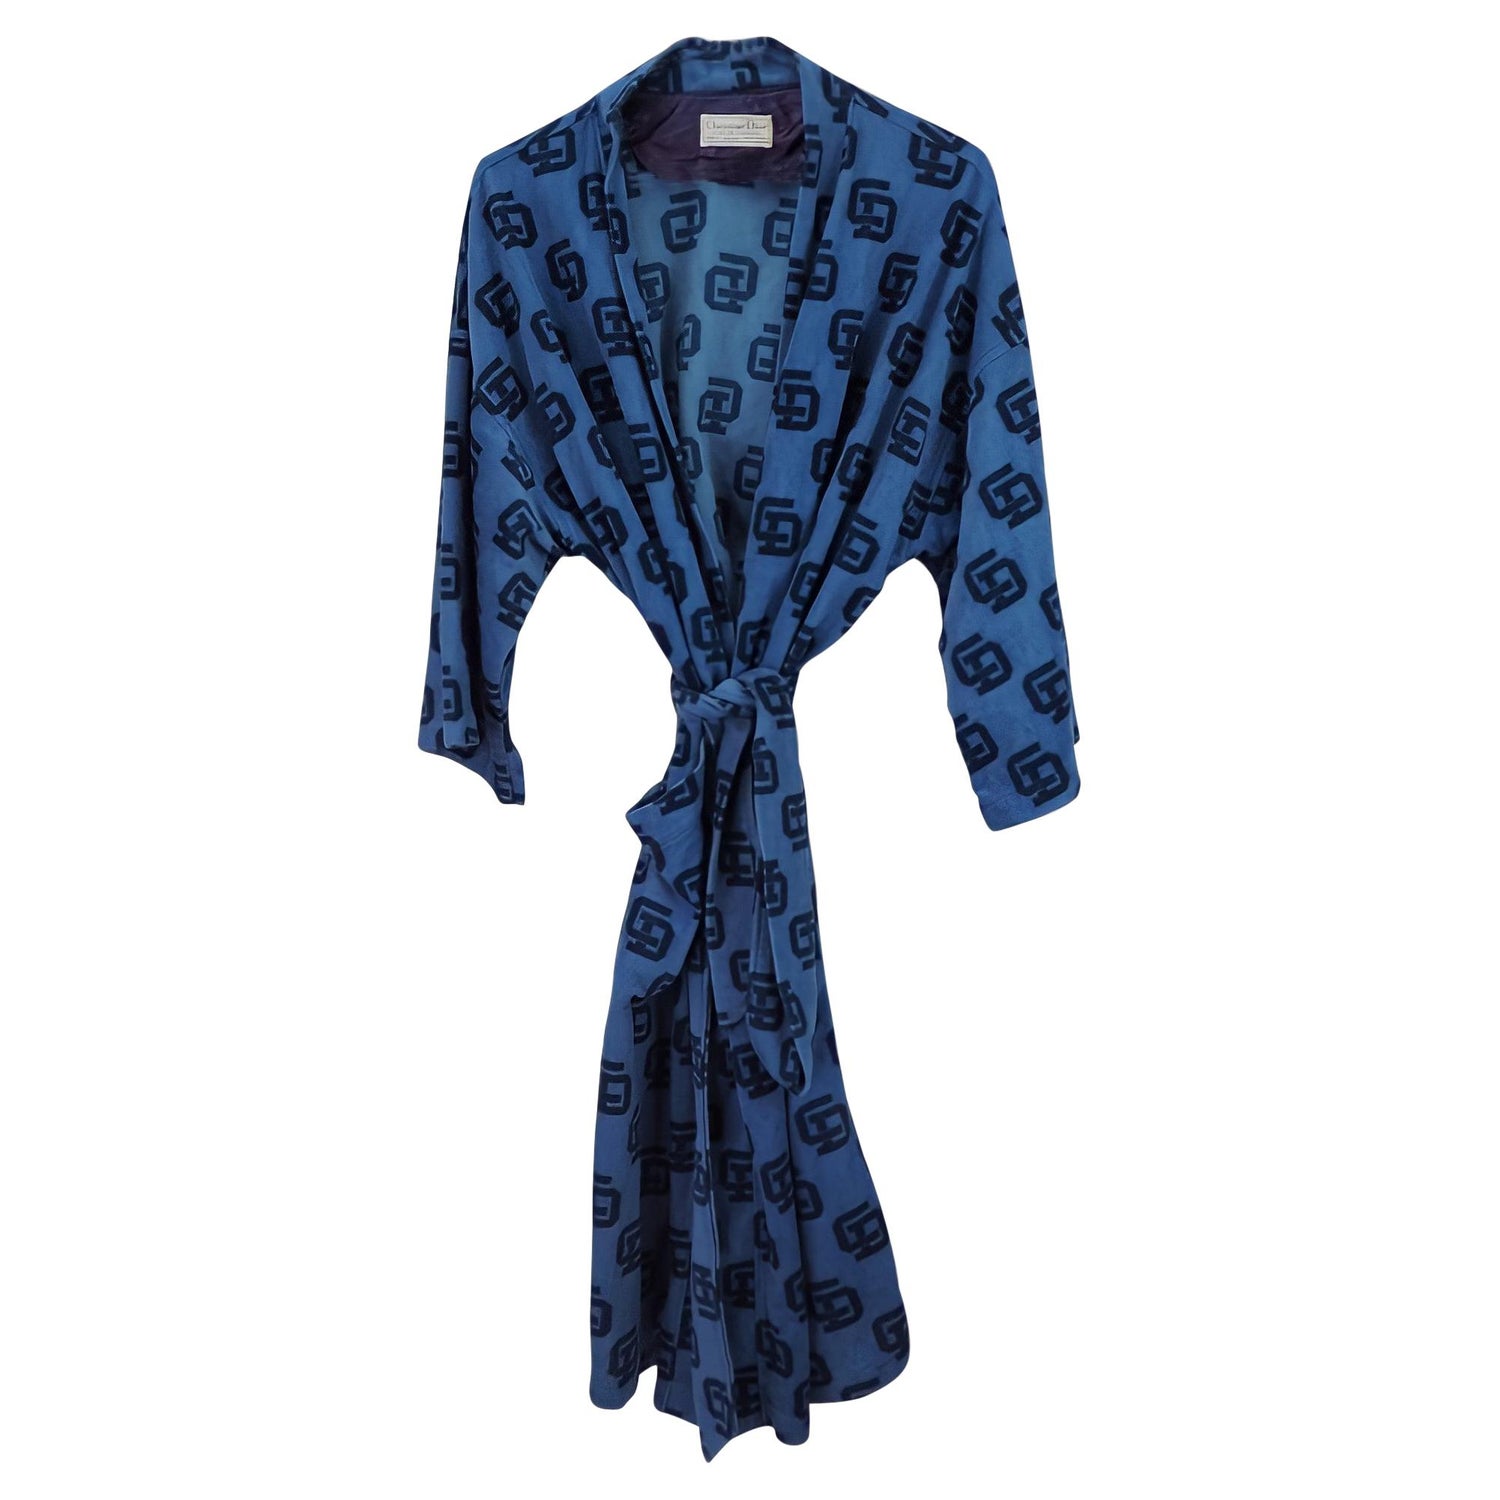 Chanel Bathrobe - For Sale on 1stDibs | chanel bath robe, chanel robe,  chanel bathrobes